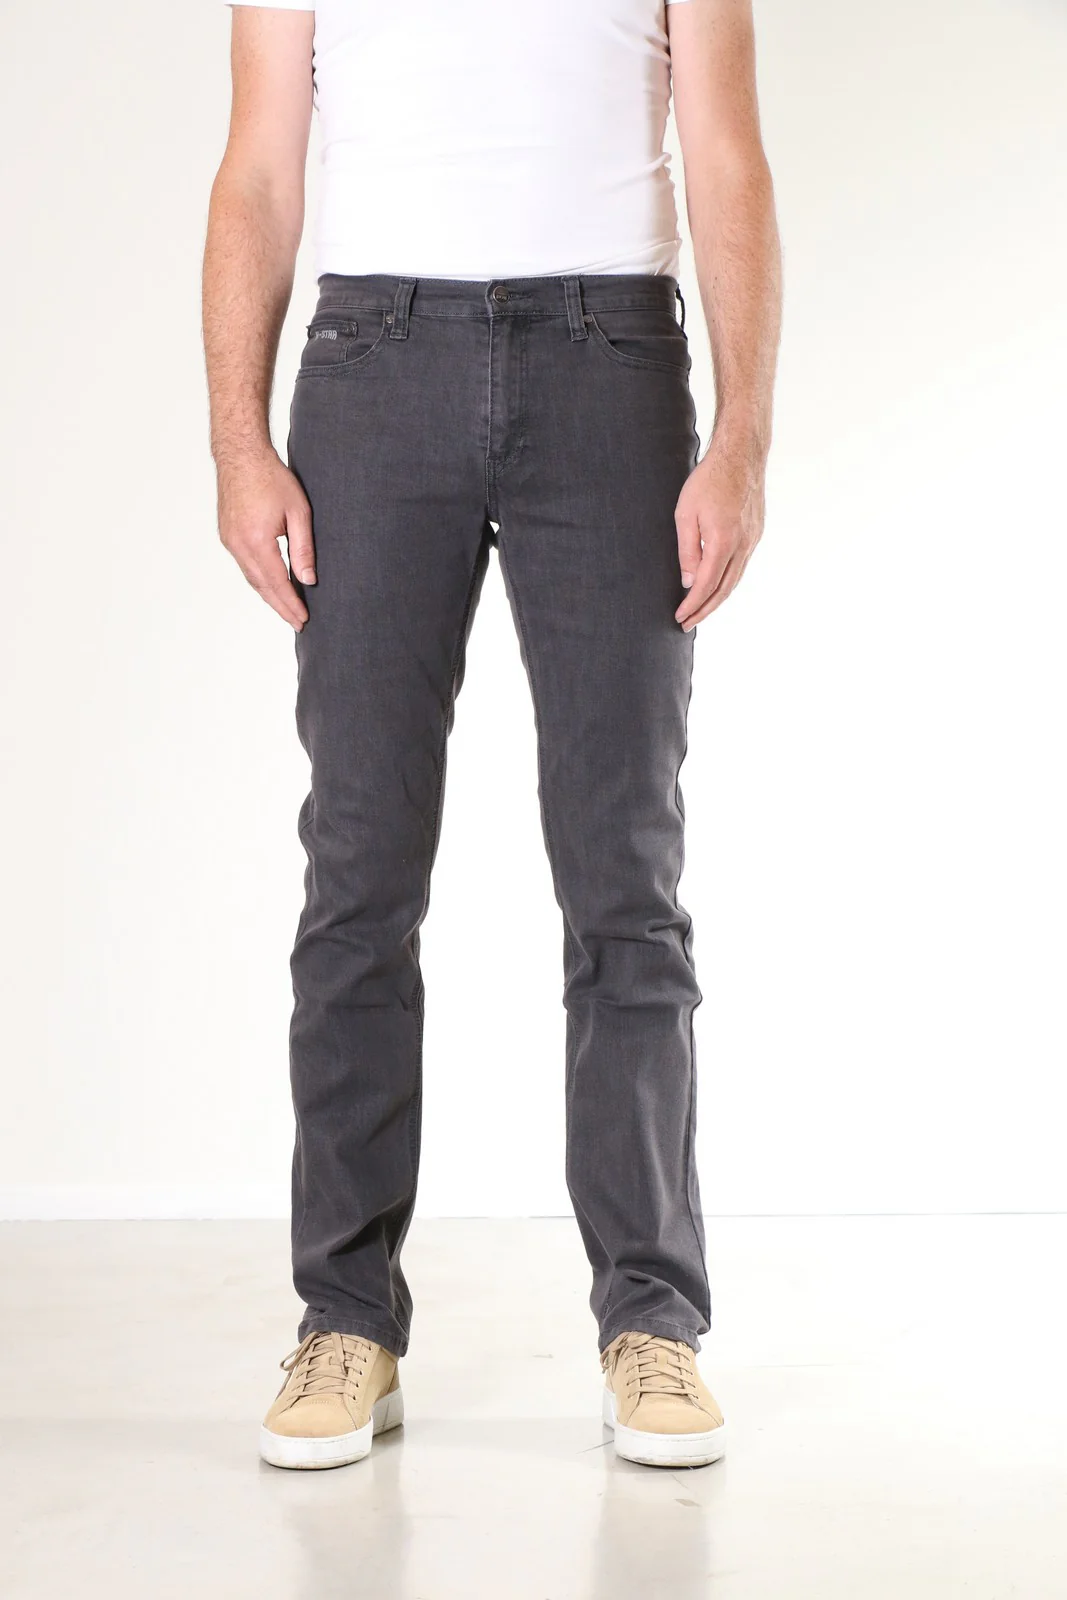 Afbeelding van New-Star Jacksonville heren regular-fit jeans dark grey